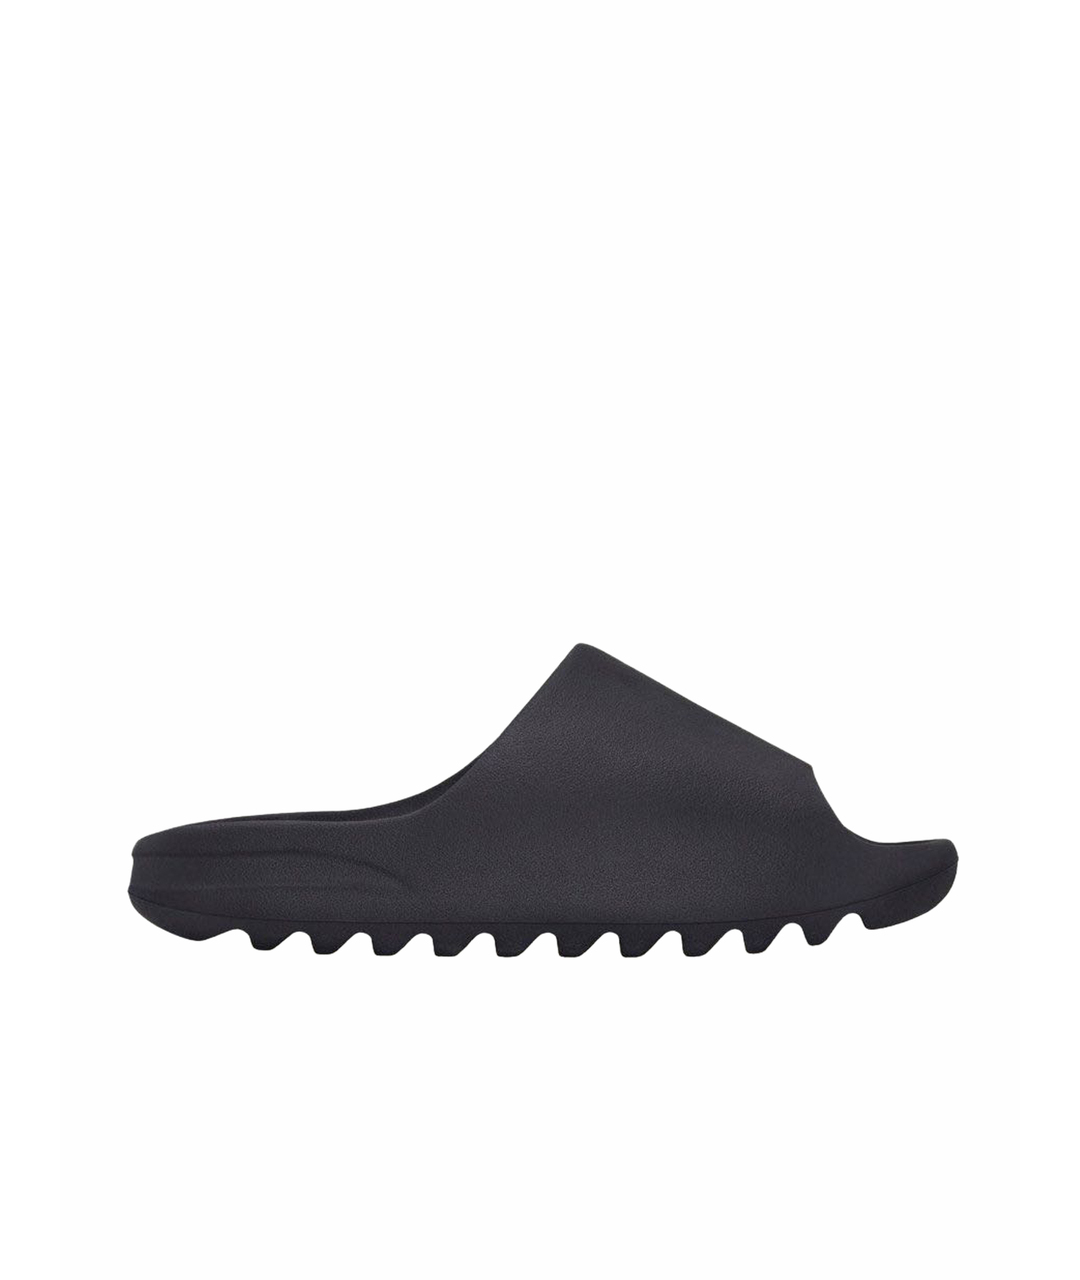 ADIDAS YEEZY Черные резиновые сандалии, фото 1